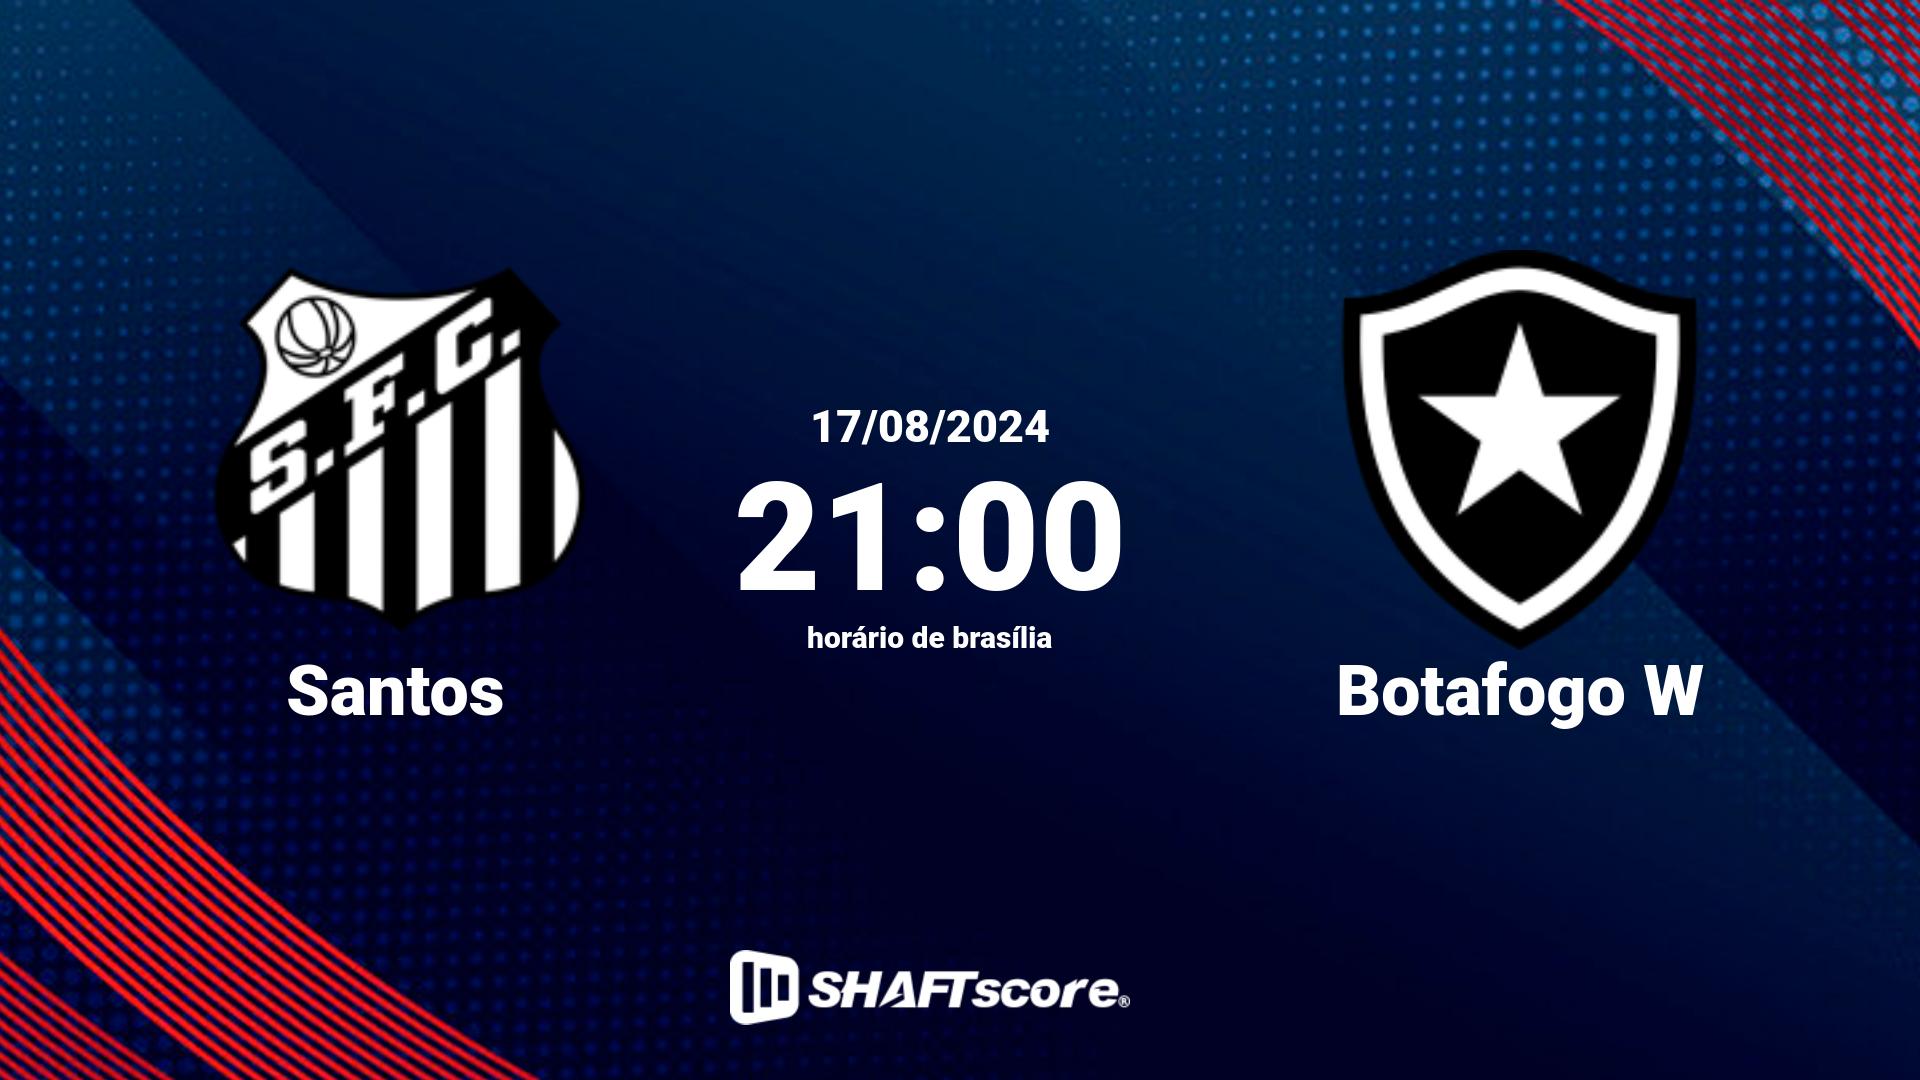 Estatísticas do jogo Santos vs Botafogo W 22.06 21:00